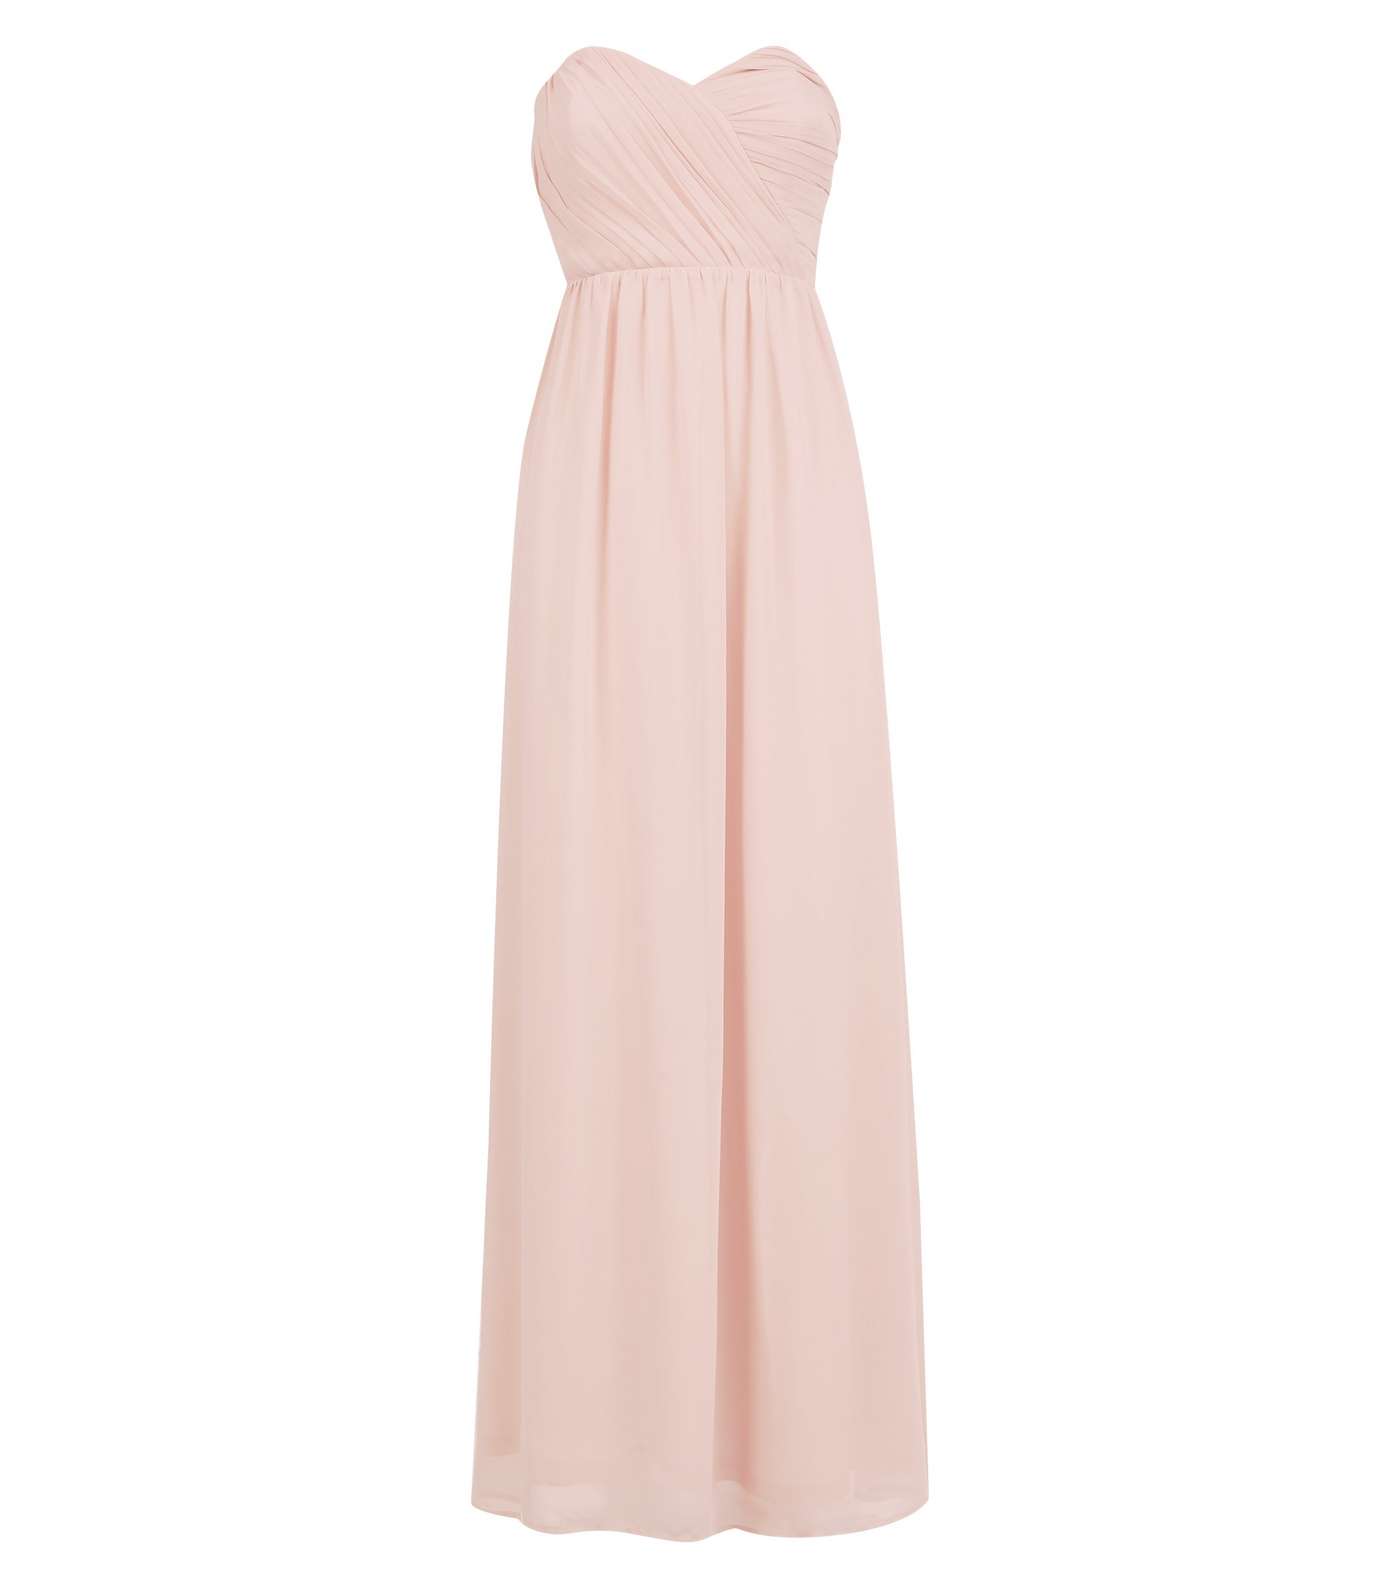 Pale Pink Chiffon Strapless Maxi Dress Image 3